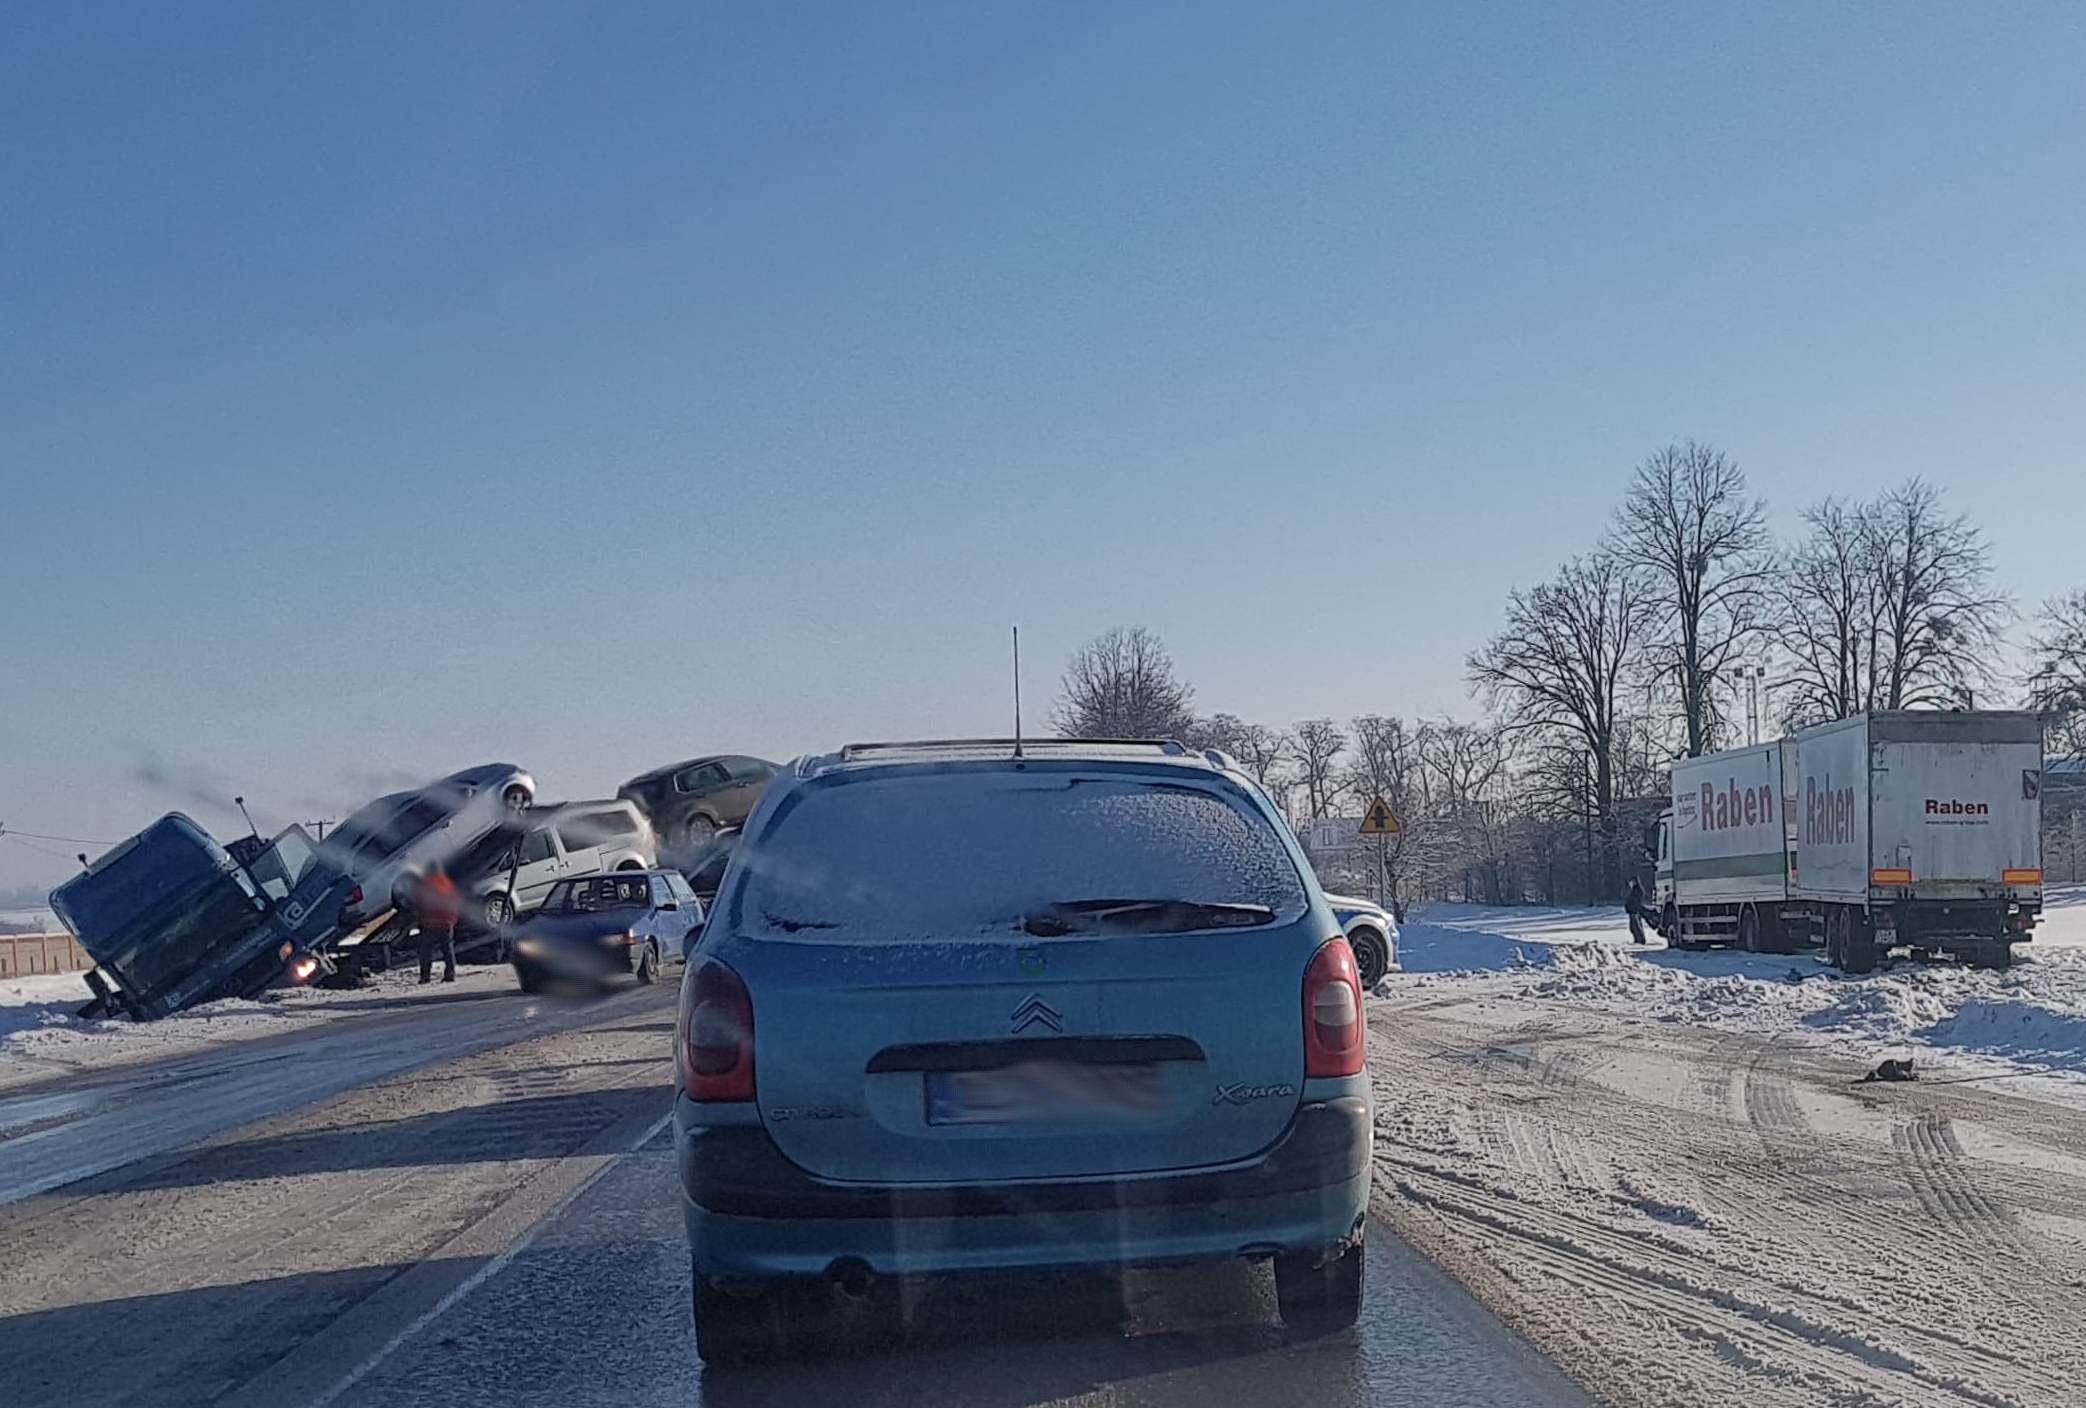 Duże utrudnienia w ruchu na trasie Lublin – Chełm. Pojazd ciężarowy przewożący auta wpadł do rowu (zdjęcia)